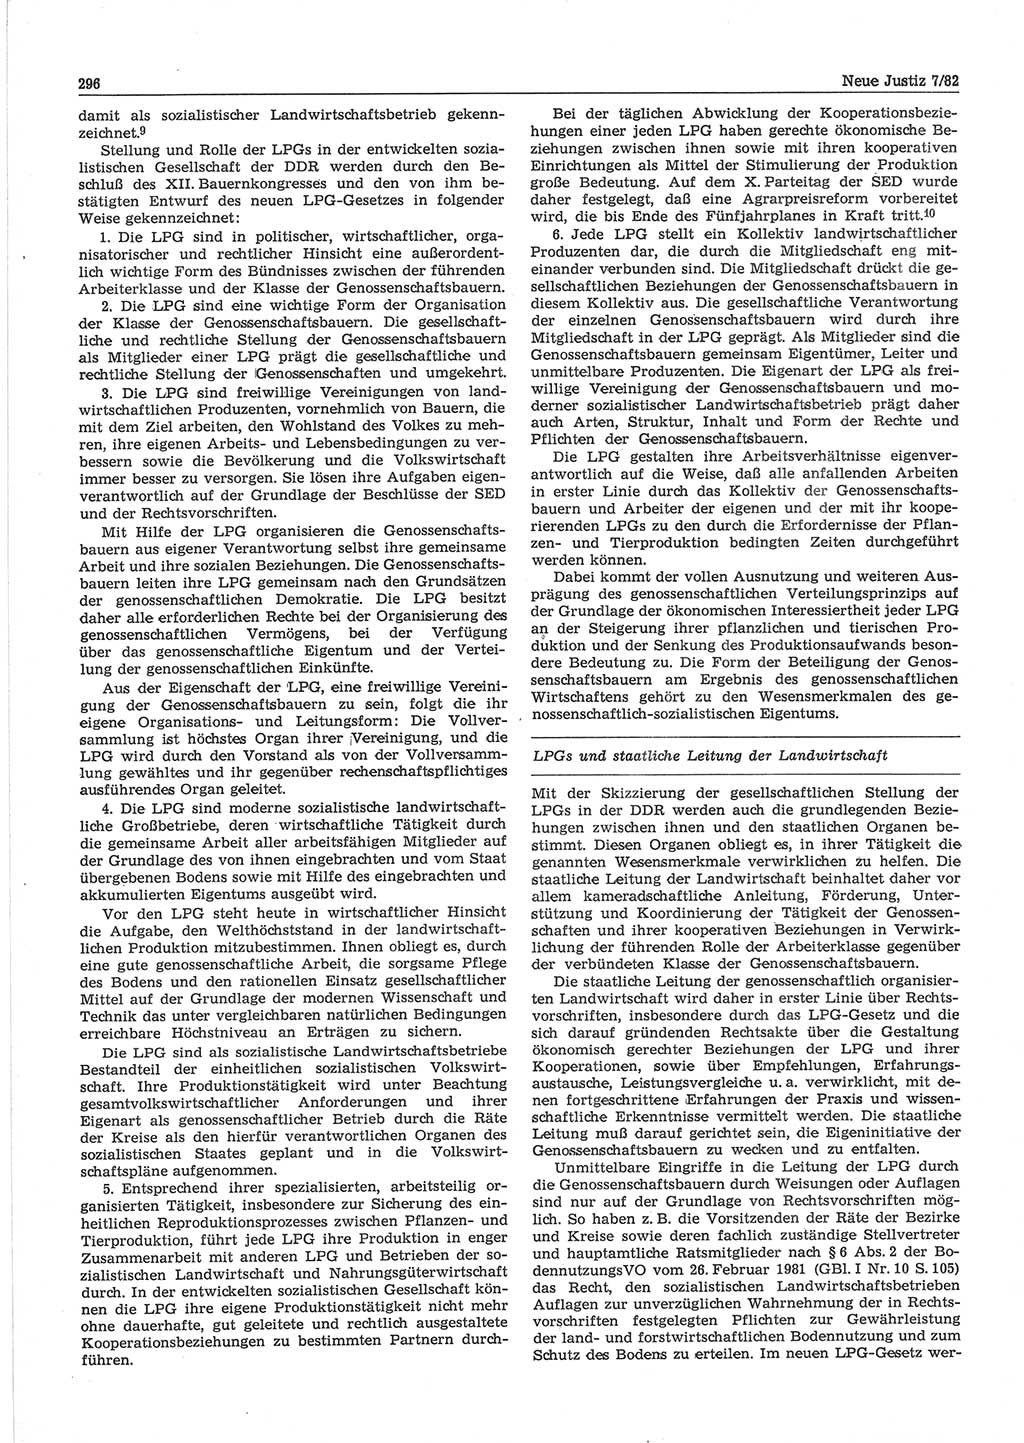 Neue Justiz (NJ), Zeitschrift für sozialistisches Recht und Gesetzlichkeit [Deutsche Demokratische Republik (DDR)], 36. Jahrgang 1982, Seite 296 (NJ DDR 1982, S. 296)